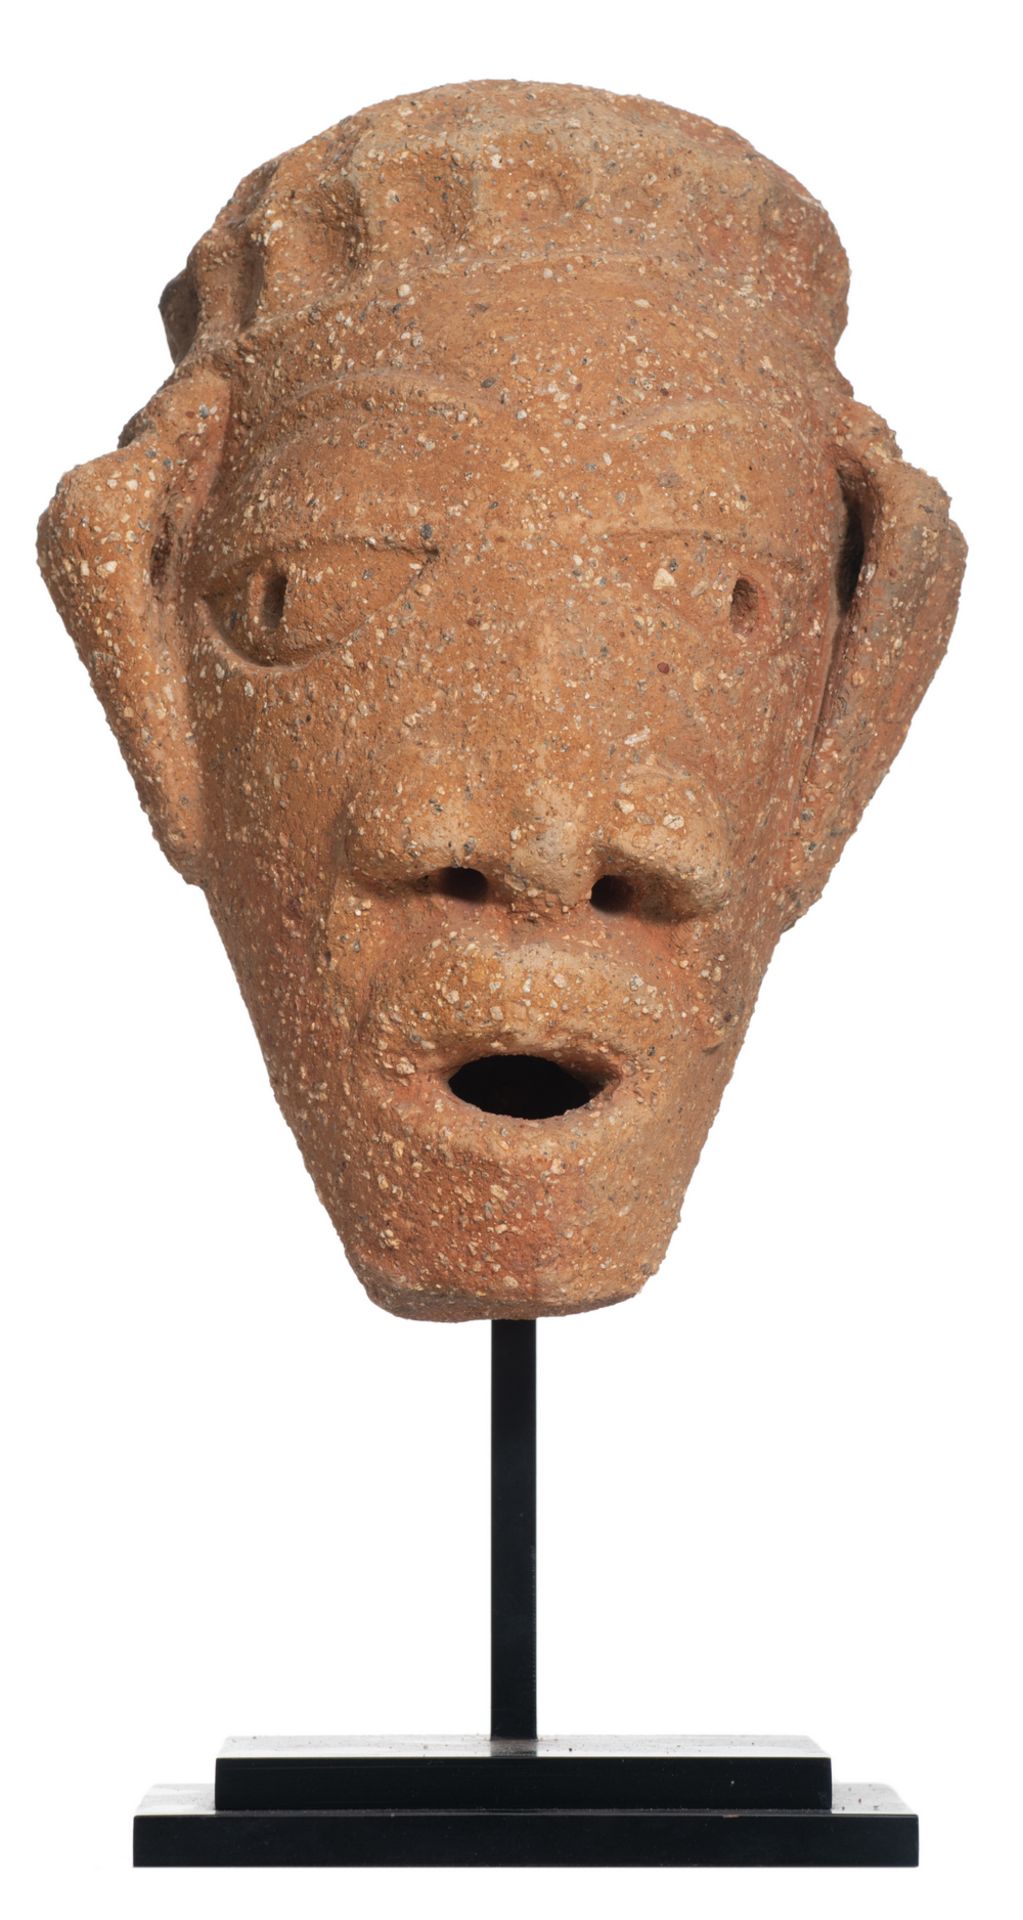 A terracotta head sculpture from the Nok culture (500 B.C. - 200 A.D.), Nigeria, H 25 cm